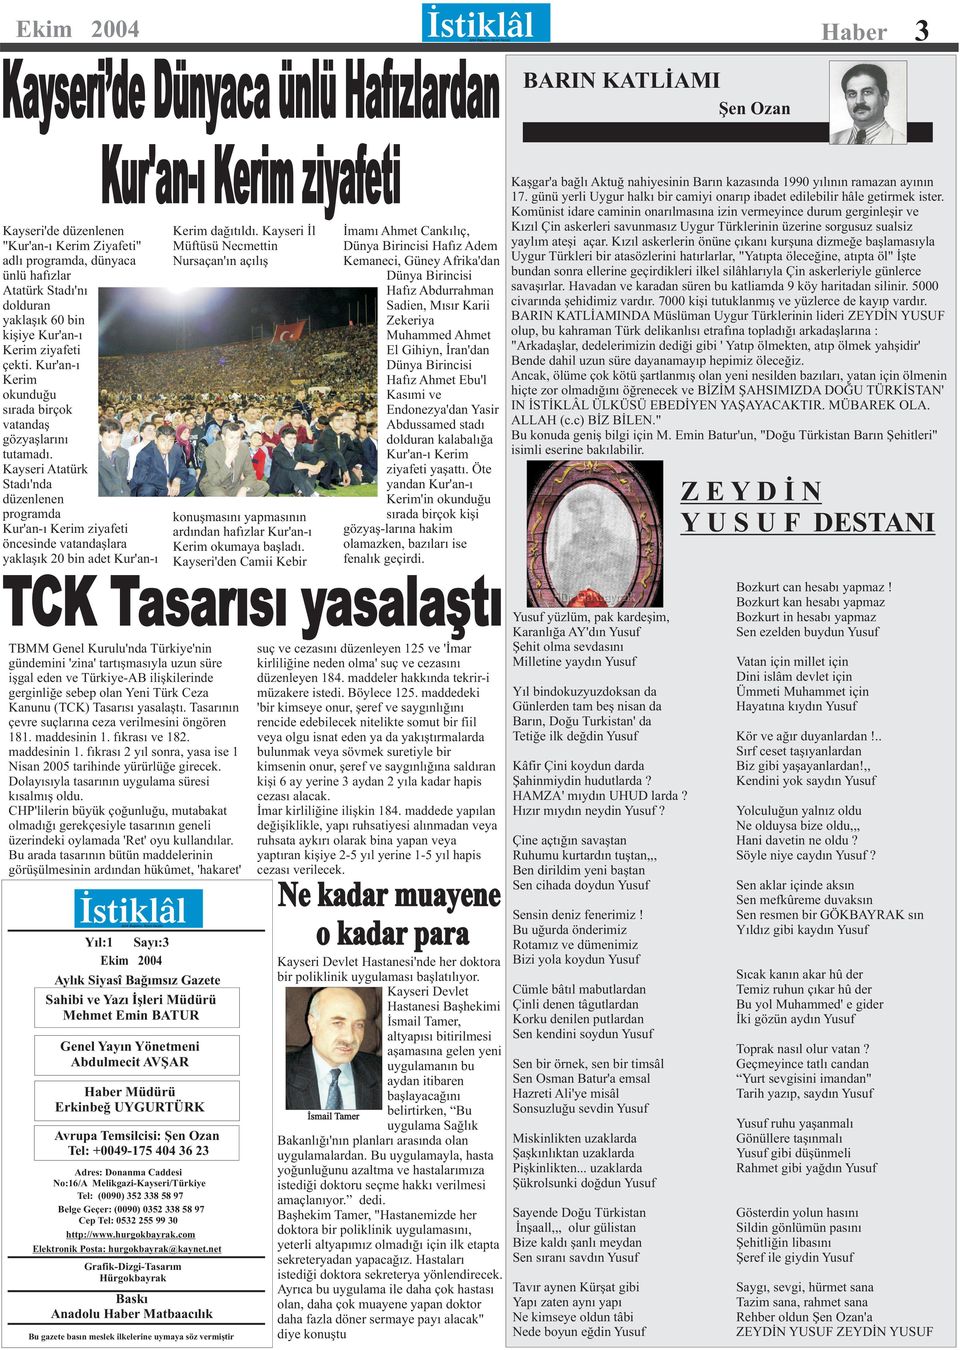 Kayseri Atatürk Stadı'nda düzenlenen programda Kur'an-ı Kerim ziyafeti öncesinde vatandaşlara yaklaşık 20 bin adet Kur'an-ı Haber Aylık Bağımsız Siyasi Gazete Kerim dağıtıldı.